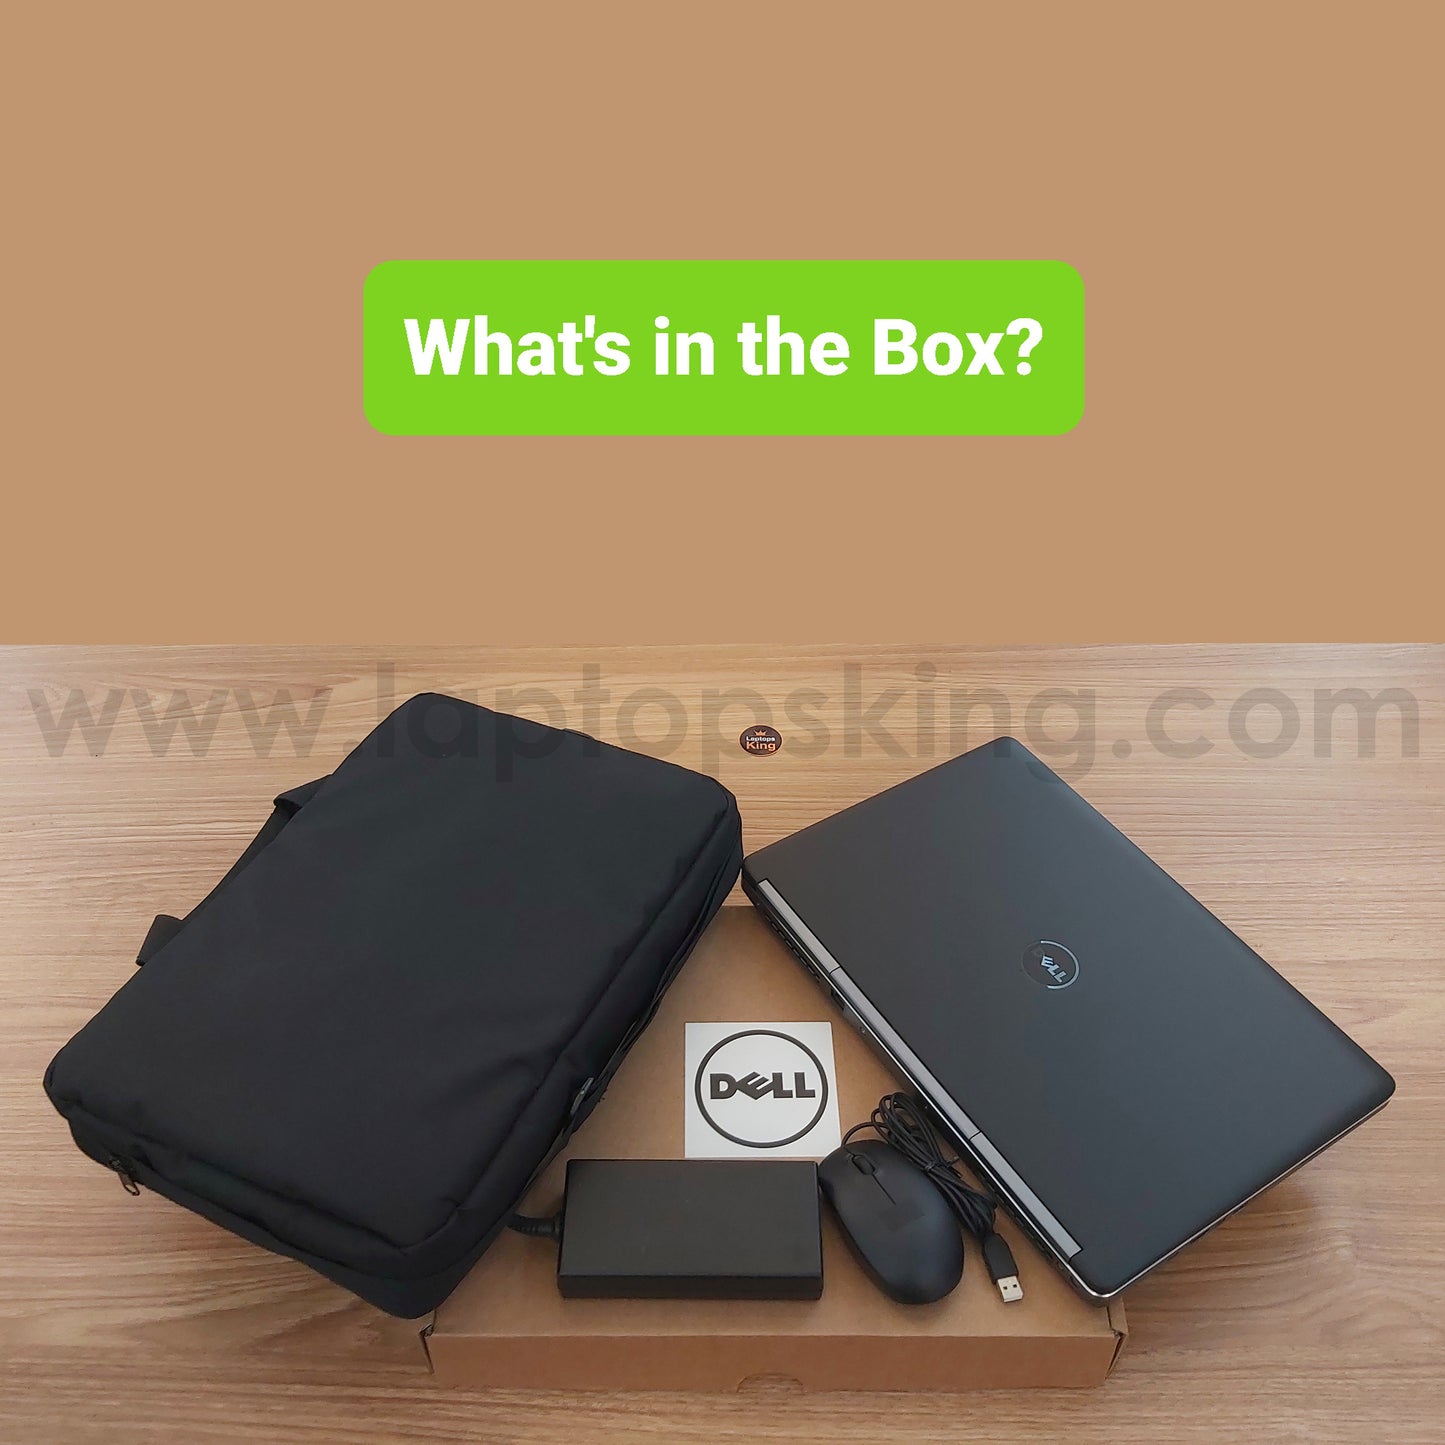 Dell Precision 7520 Core i7 Nvidia Quadro M1200 4gb 15.6" Laptops (Open Box)